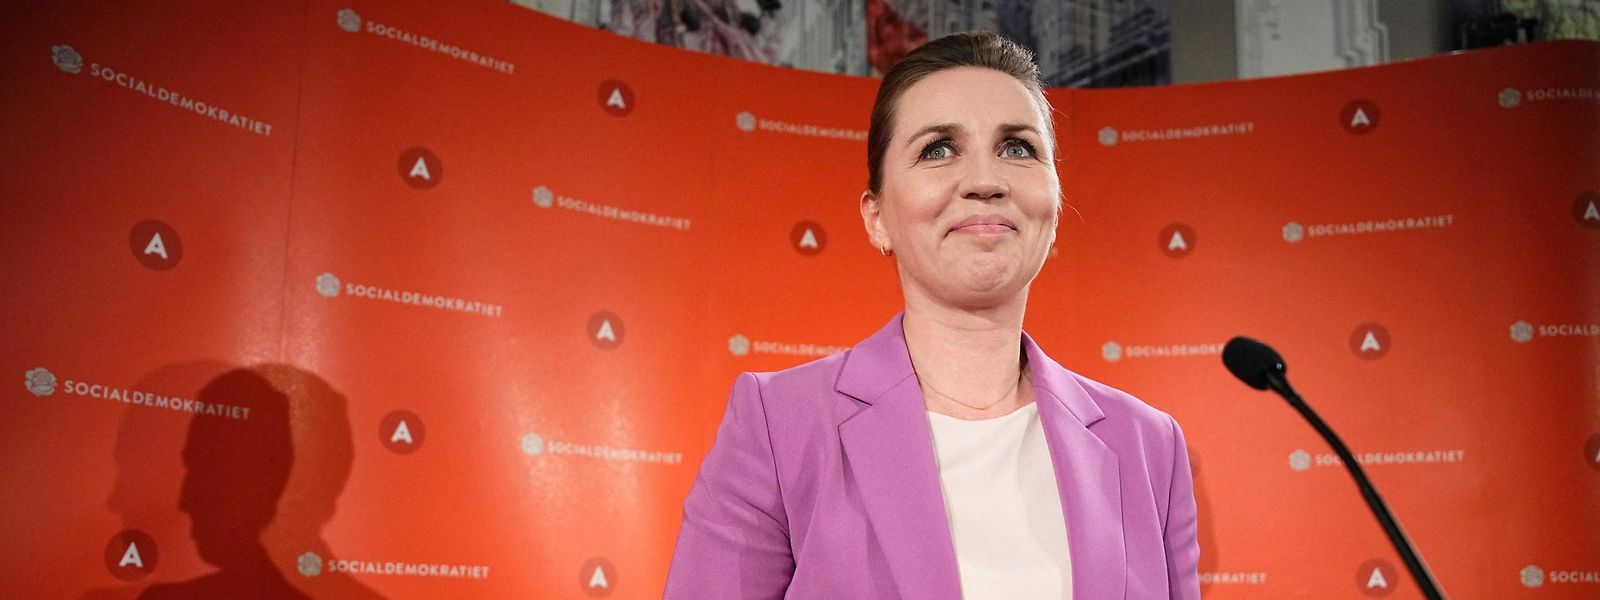 Die dänische Premierministerin Mette Frederiksen freut sich über das Ergebnis des Referendums.